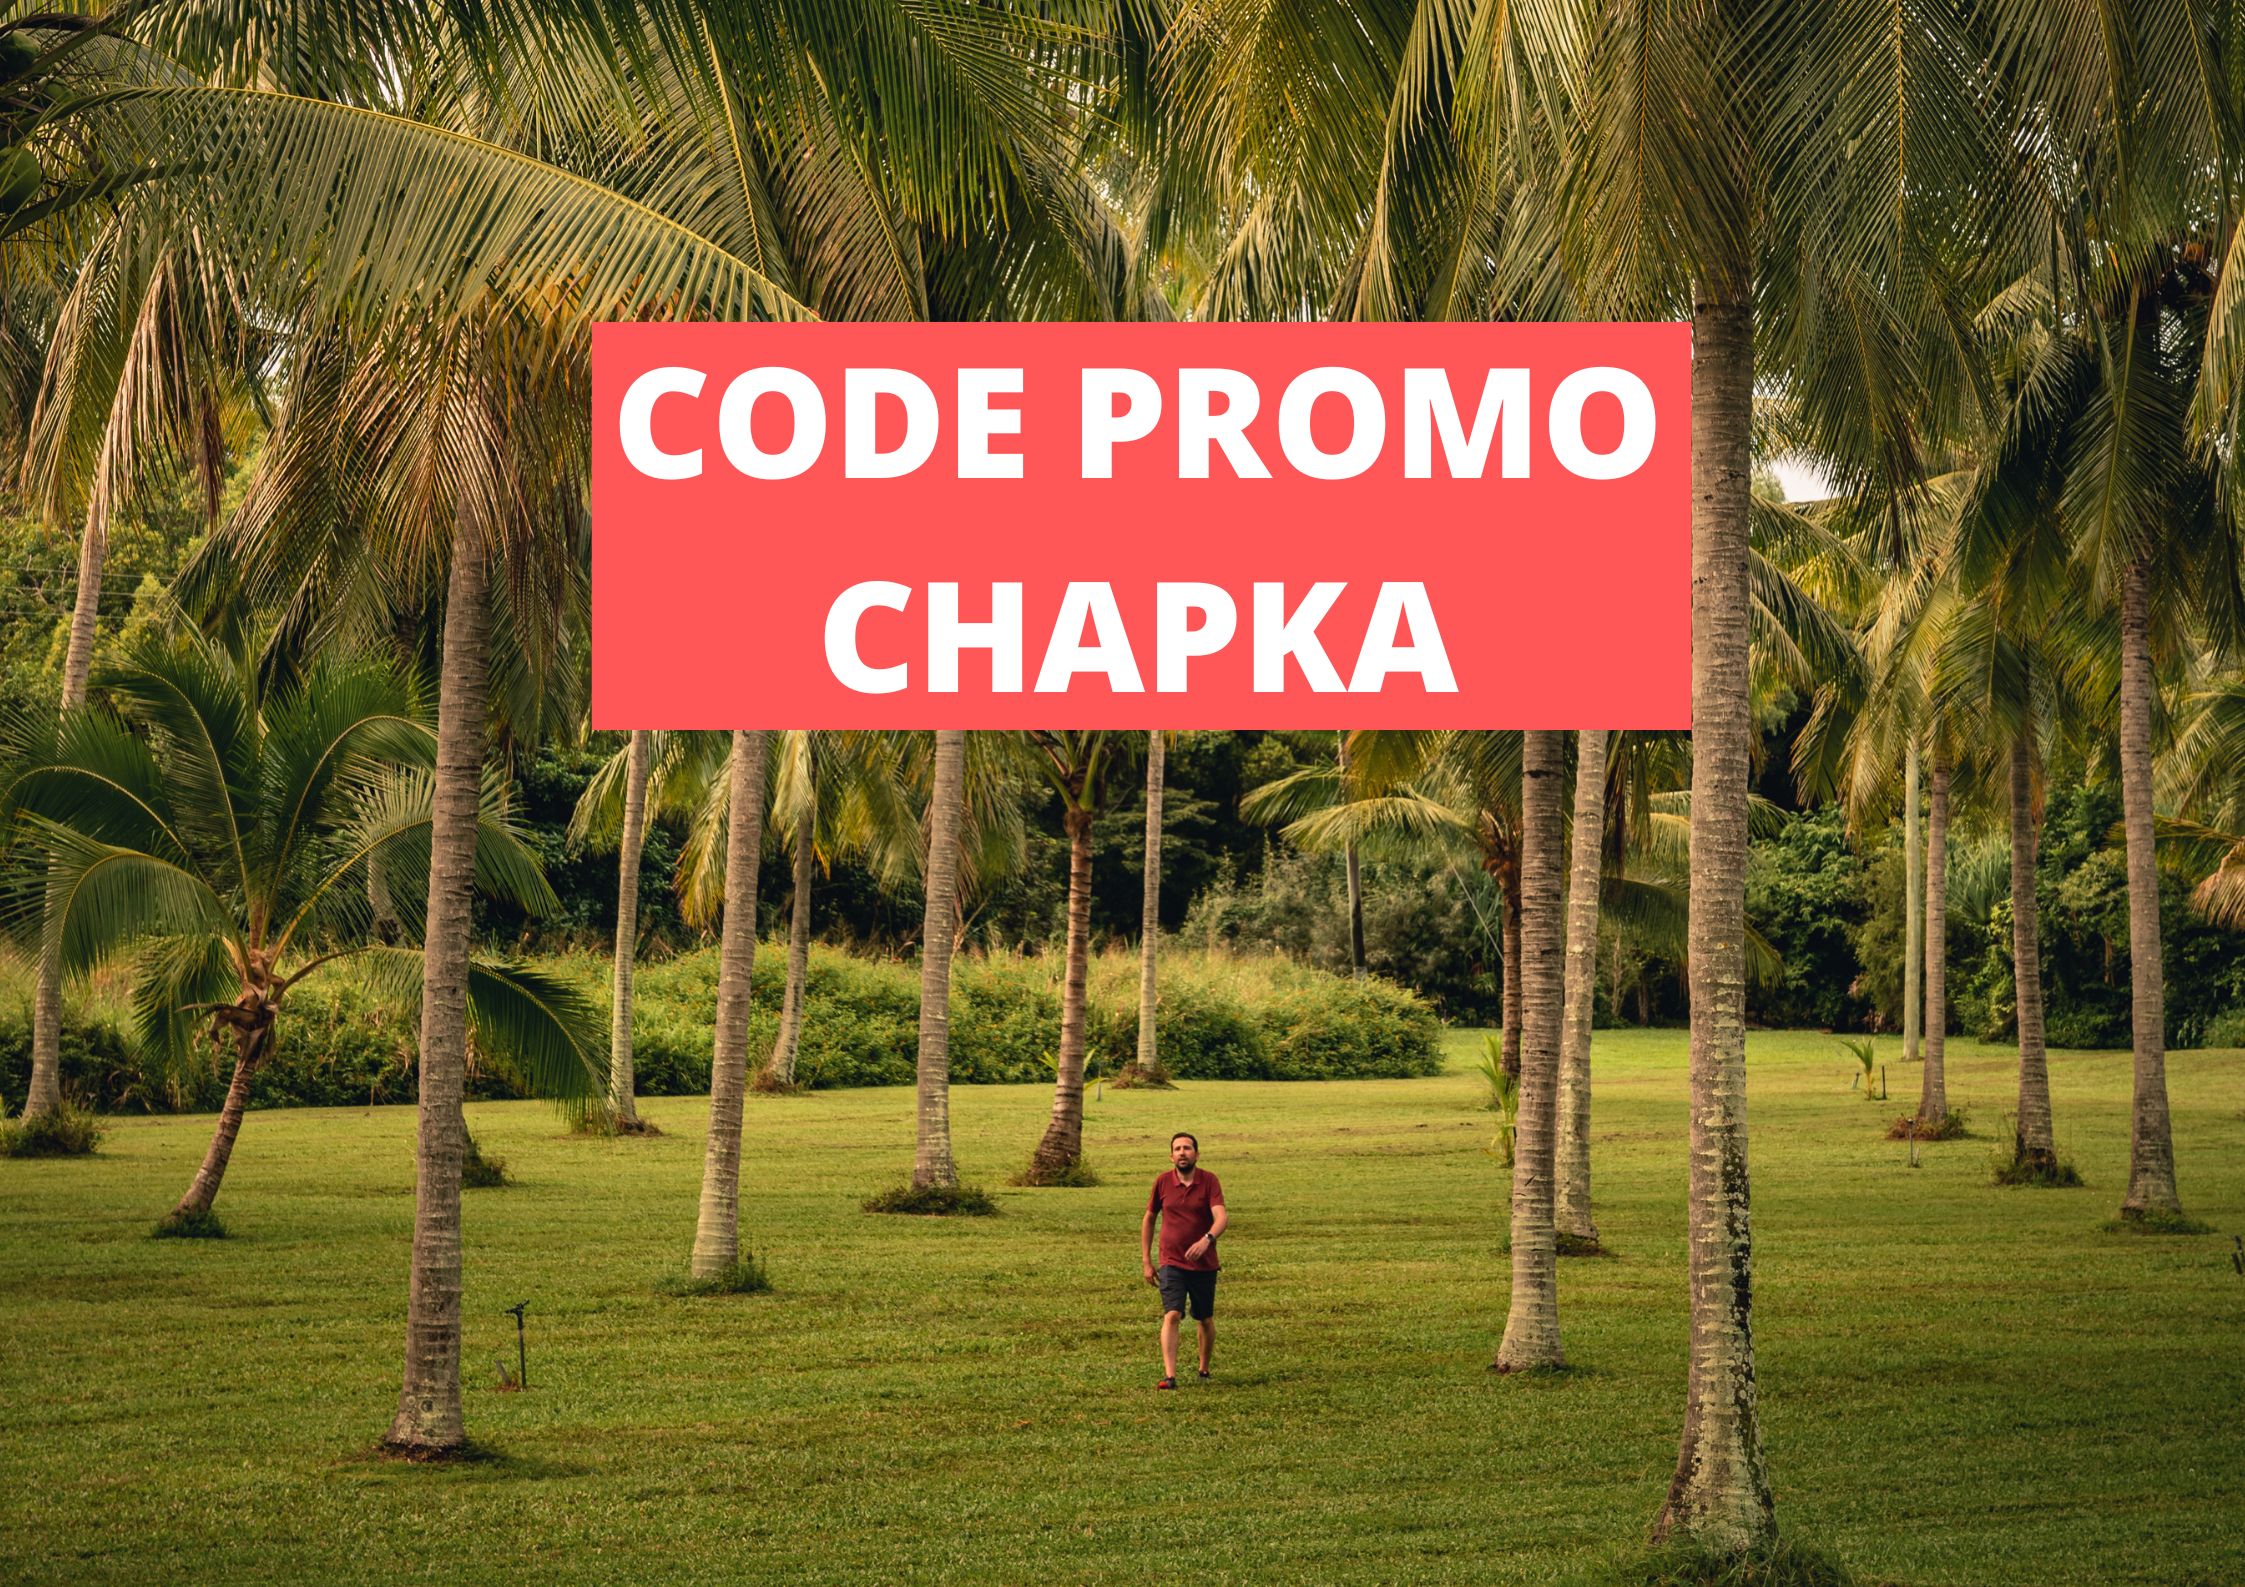 Code promo Chapka assurance 2022 : PVT/WHV, voyages, études et expat